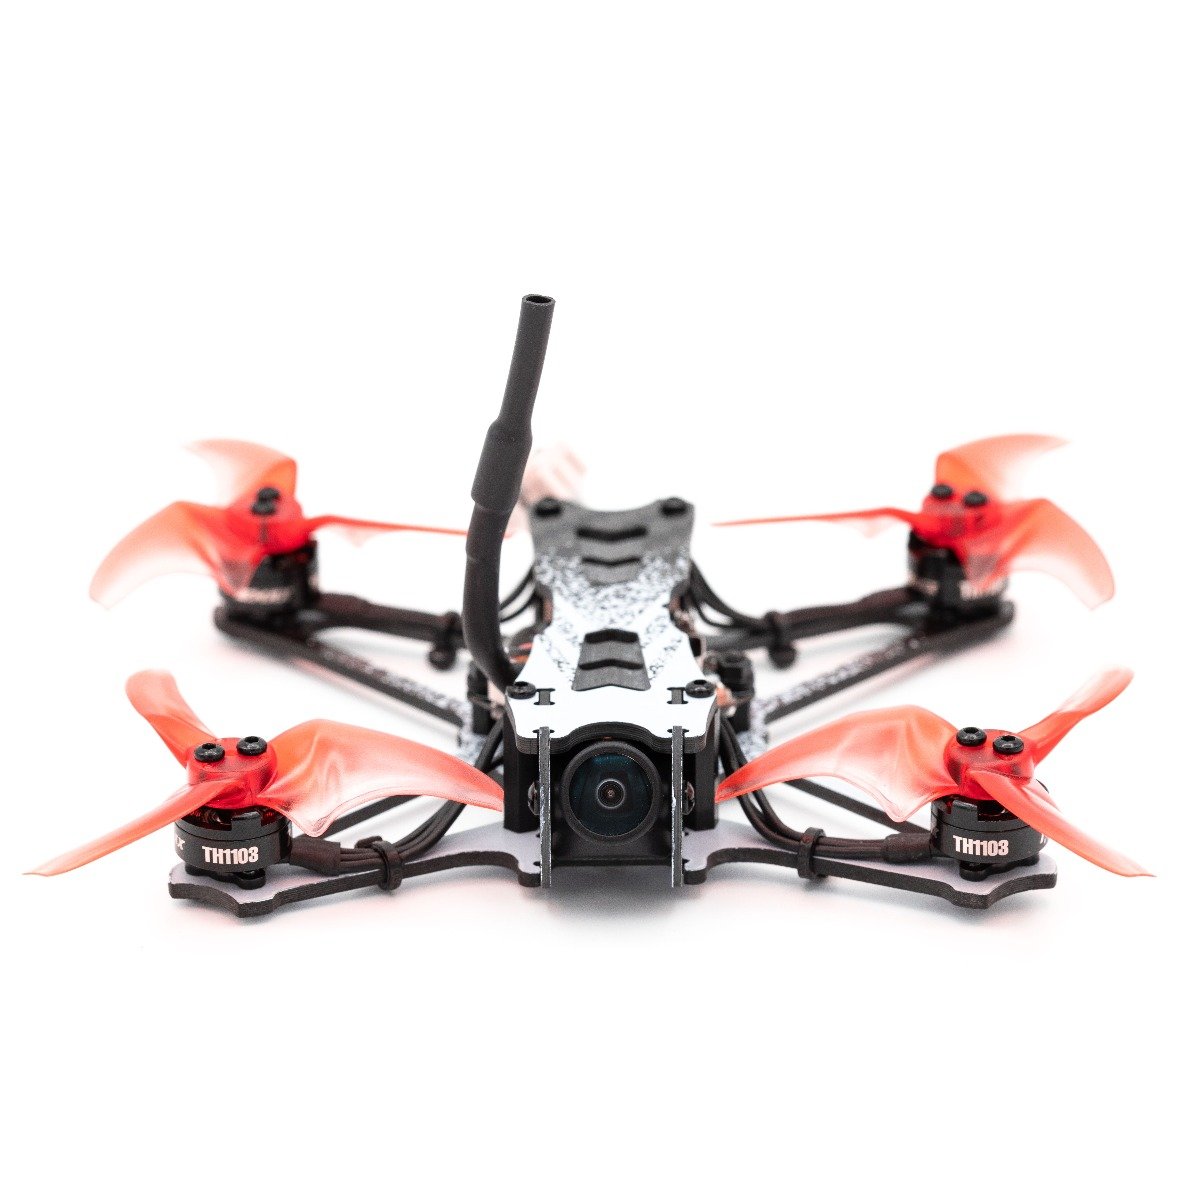 EMAX Tinyhawk II Freestyle RTF Kit - комплект: дрон з БК моторами, FPV окулярами, пультом, 2 батареями, з кейсом